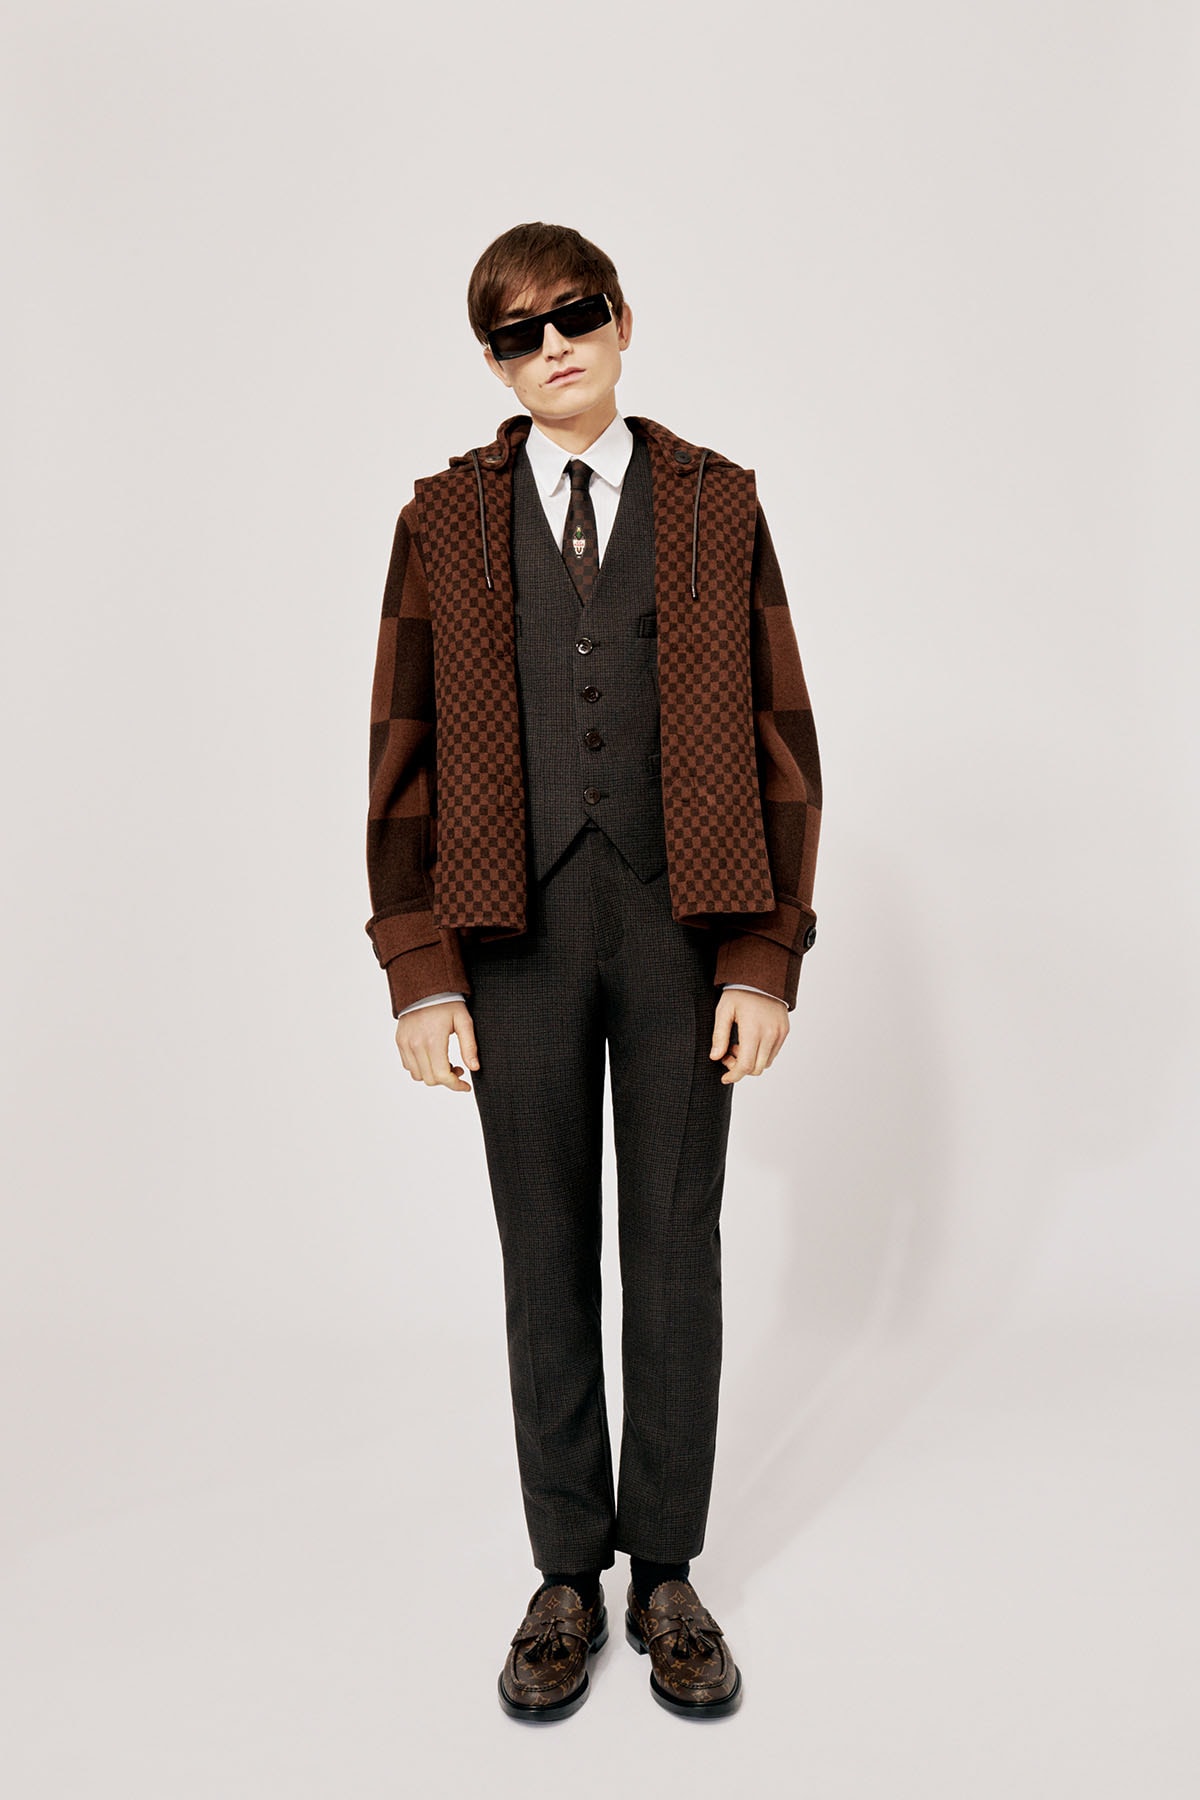 Louis Vuitton NIGO x Virgil Alboh LV2 Collection Lookbook Knit Jacket Vest Pants